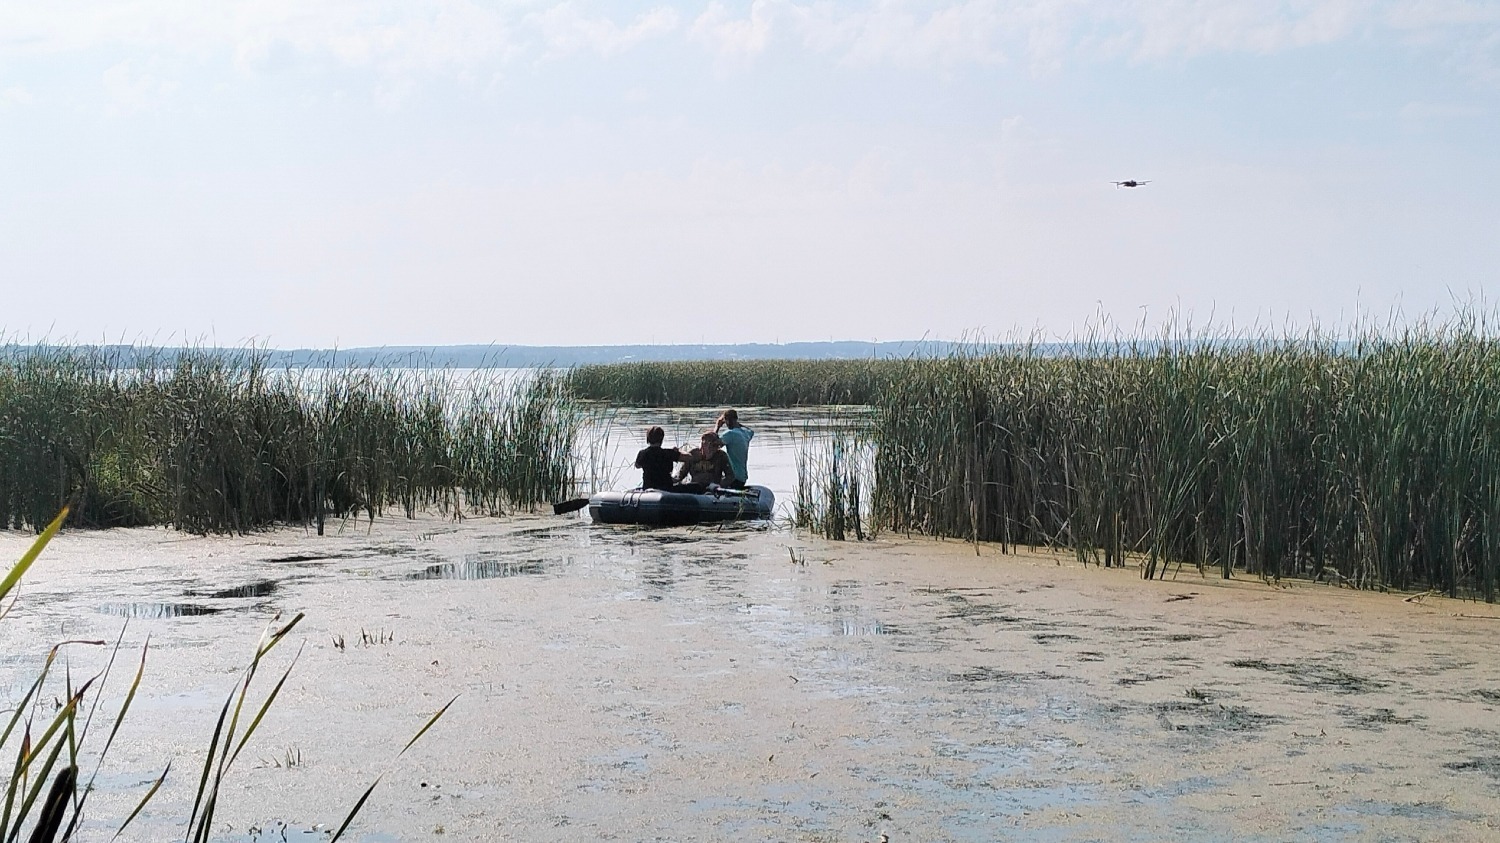 Ближняя зона изучена. Экологи уплывают на лодке дальше вдоль береговой линии Шершневского водохранилища